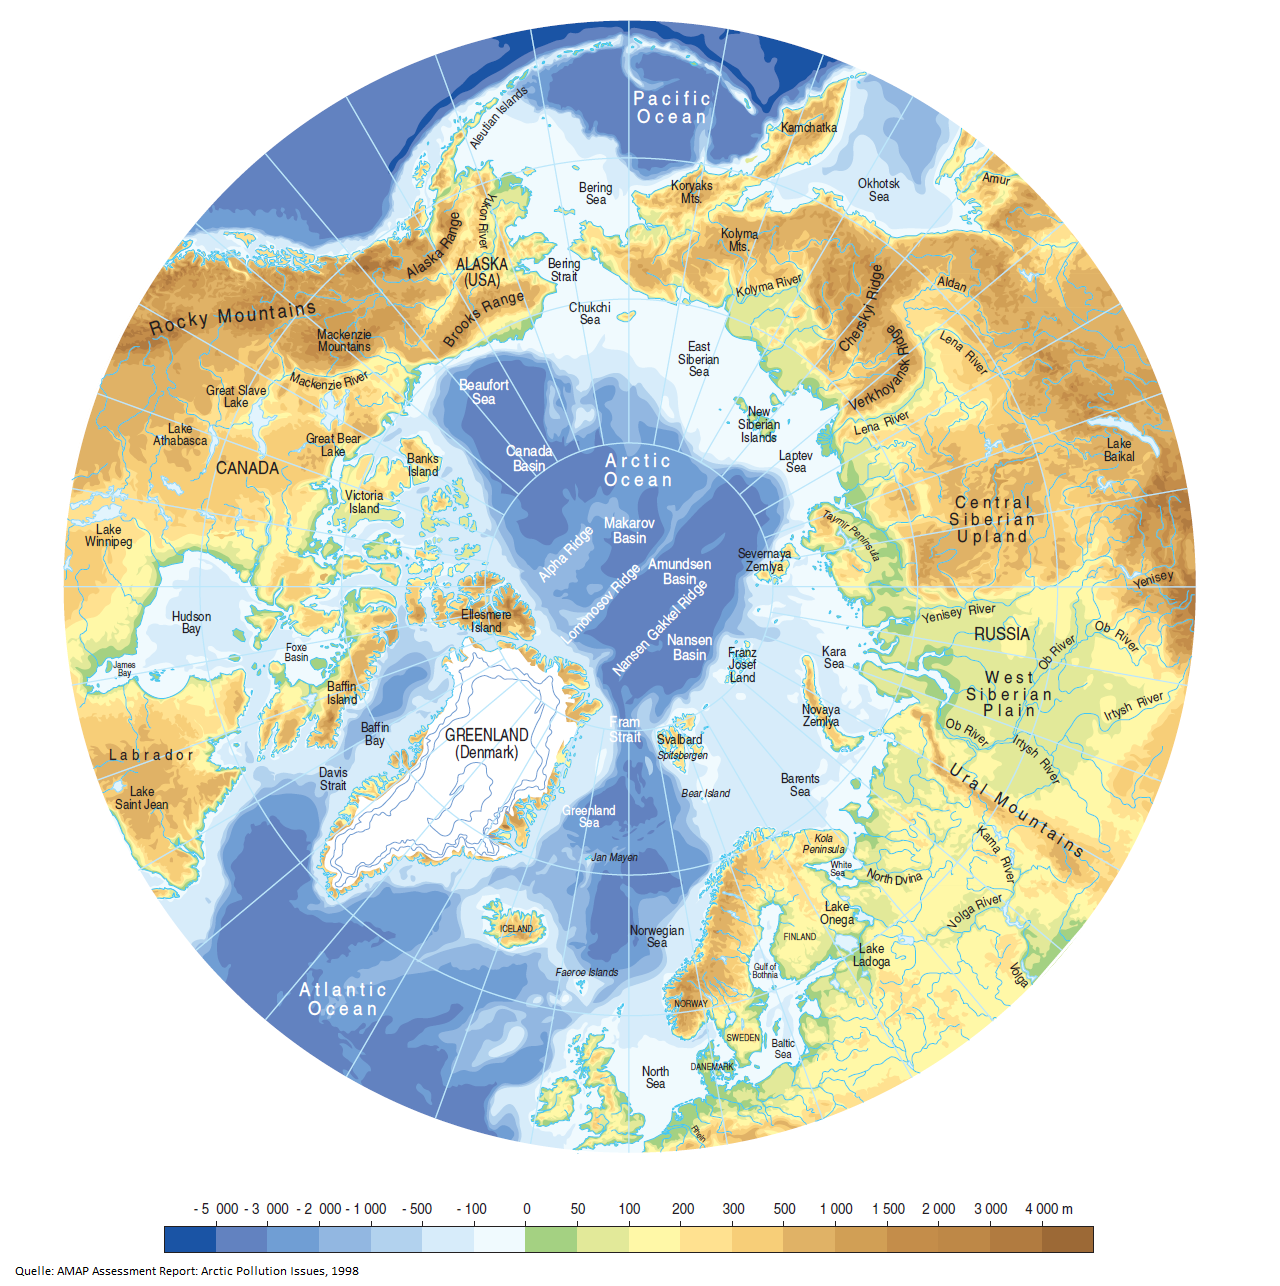 Grafik der Topografie und Bathymetrie der Arktis